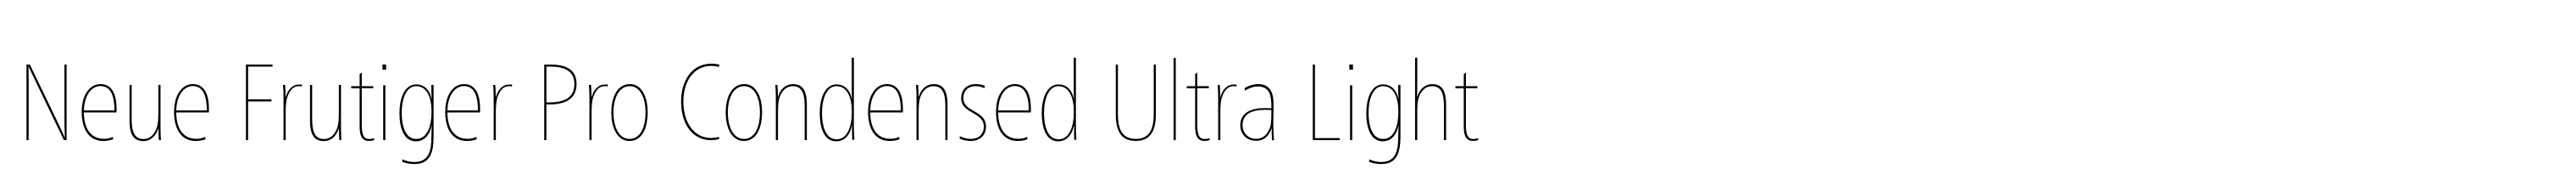 Neue Frutiger Pro Condensed Ultra Light